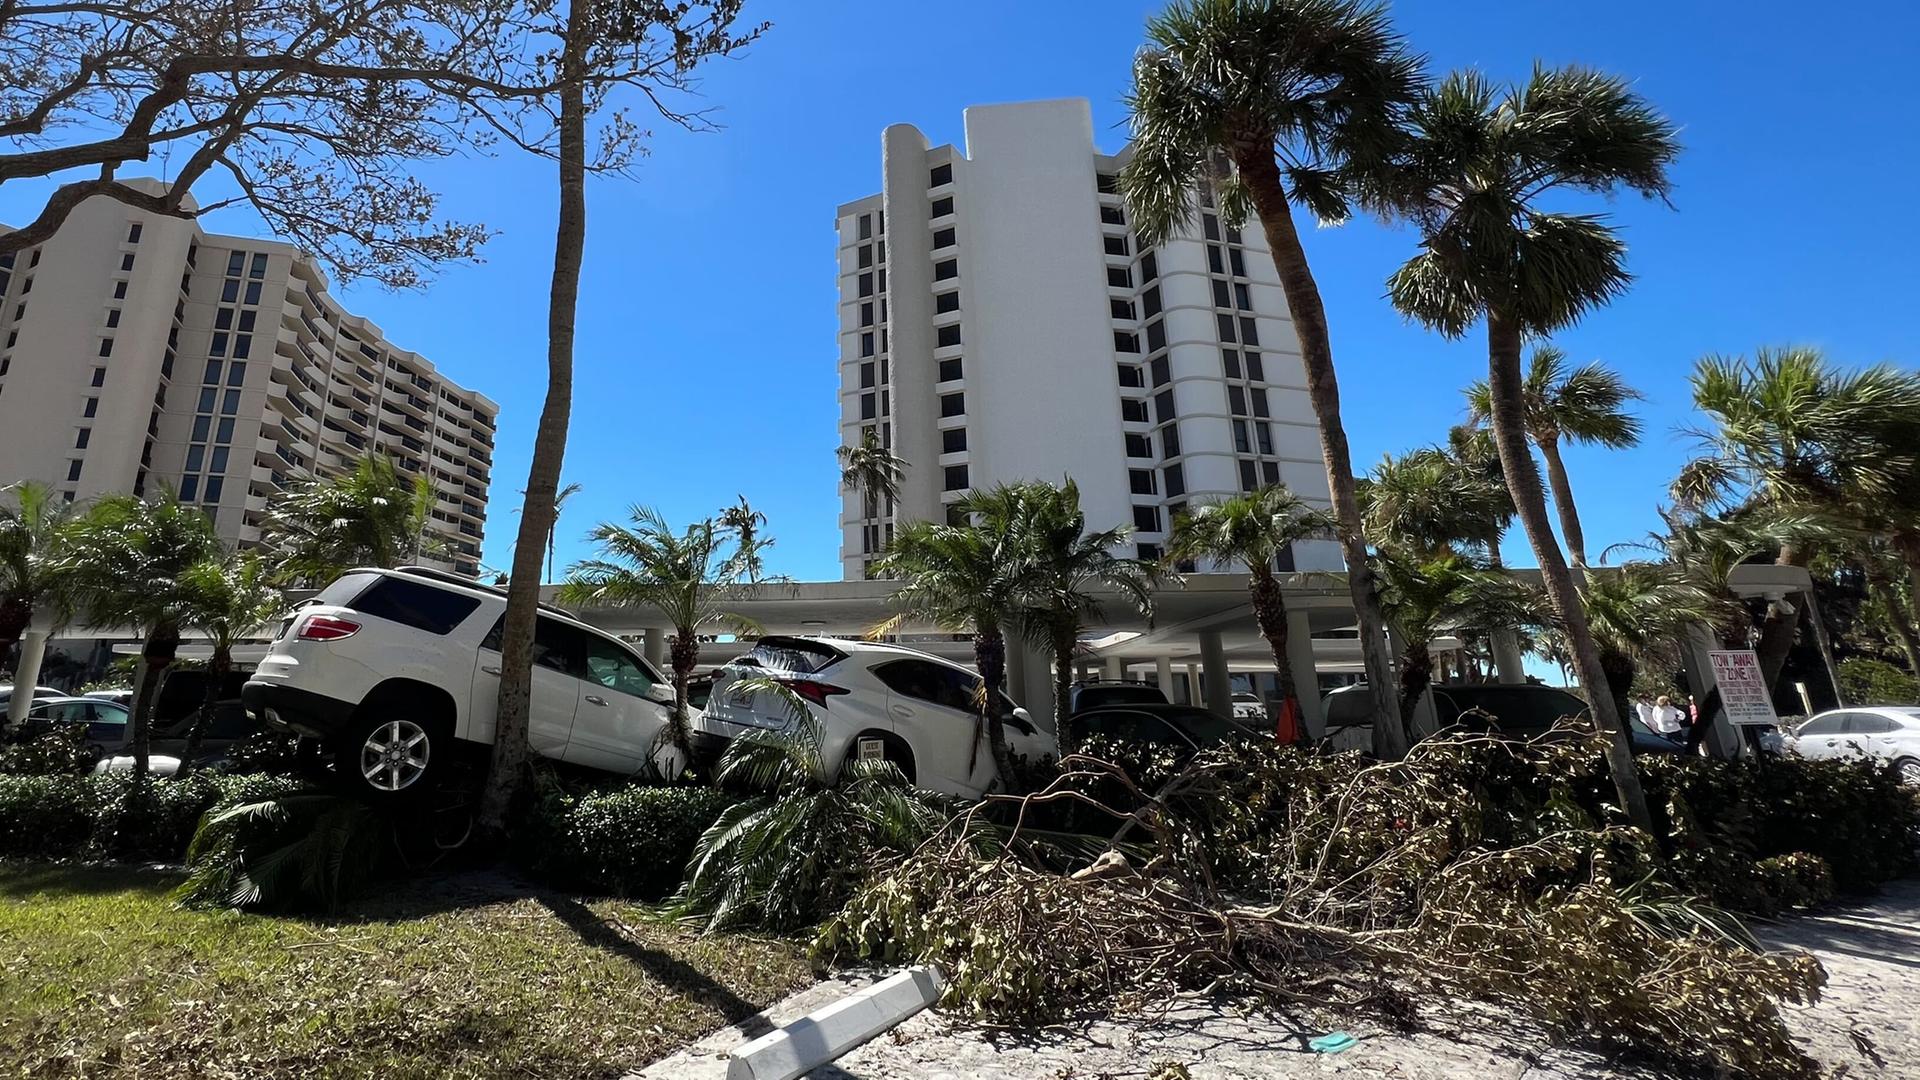 Zerstörungen durch Hurrikan "Ian" am noblen Gulf Shore Boulevard, in unmittelbarerer Nähe zum Strand. In Naples war Â«IanÂ» am Mittwoch als Hurrikan der Stufe vier mit rund 240 Kilometern pro Stunde auf Land getroffen. (zu dpa "Nach Hurrikan Â«IanÂ»: Chaos an Floridas Westküste")